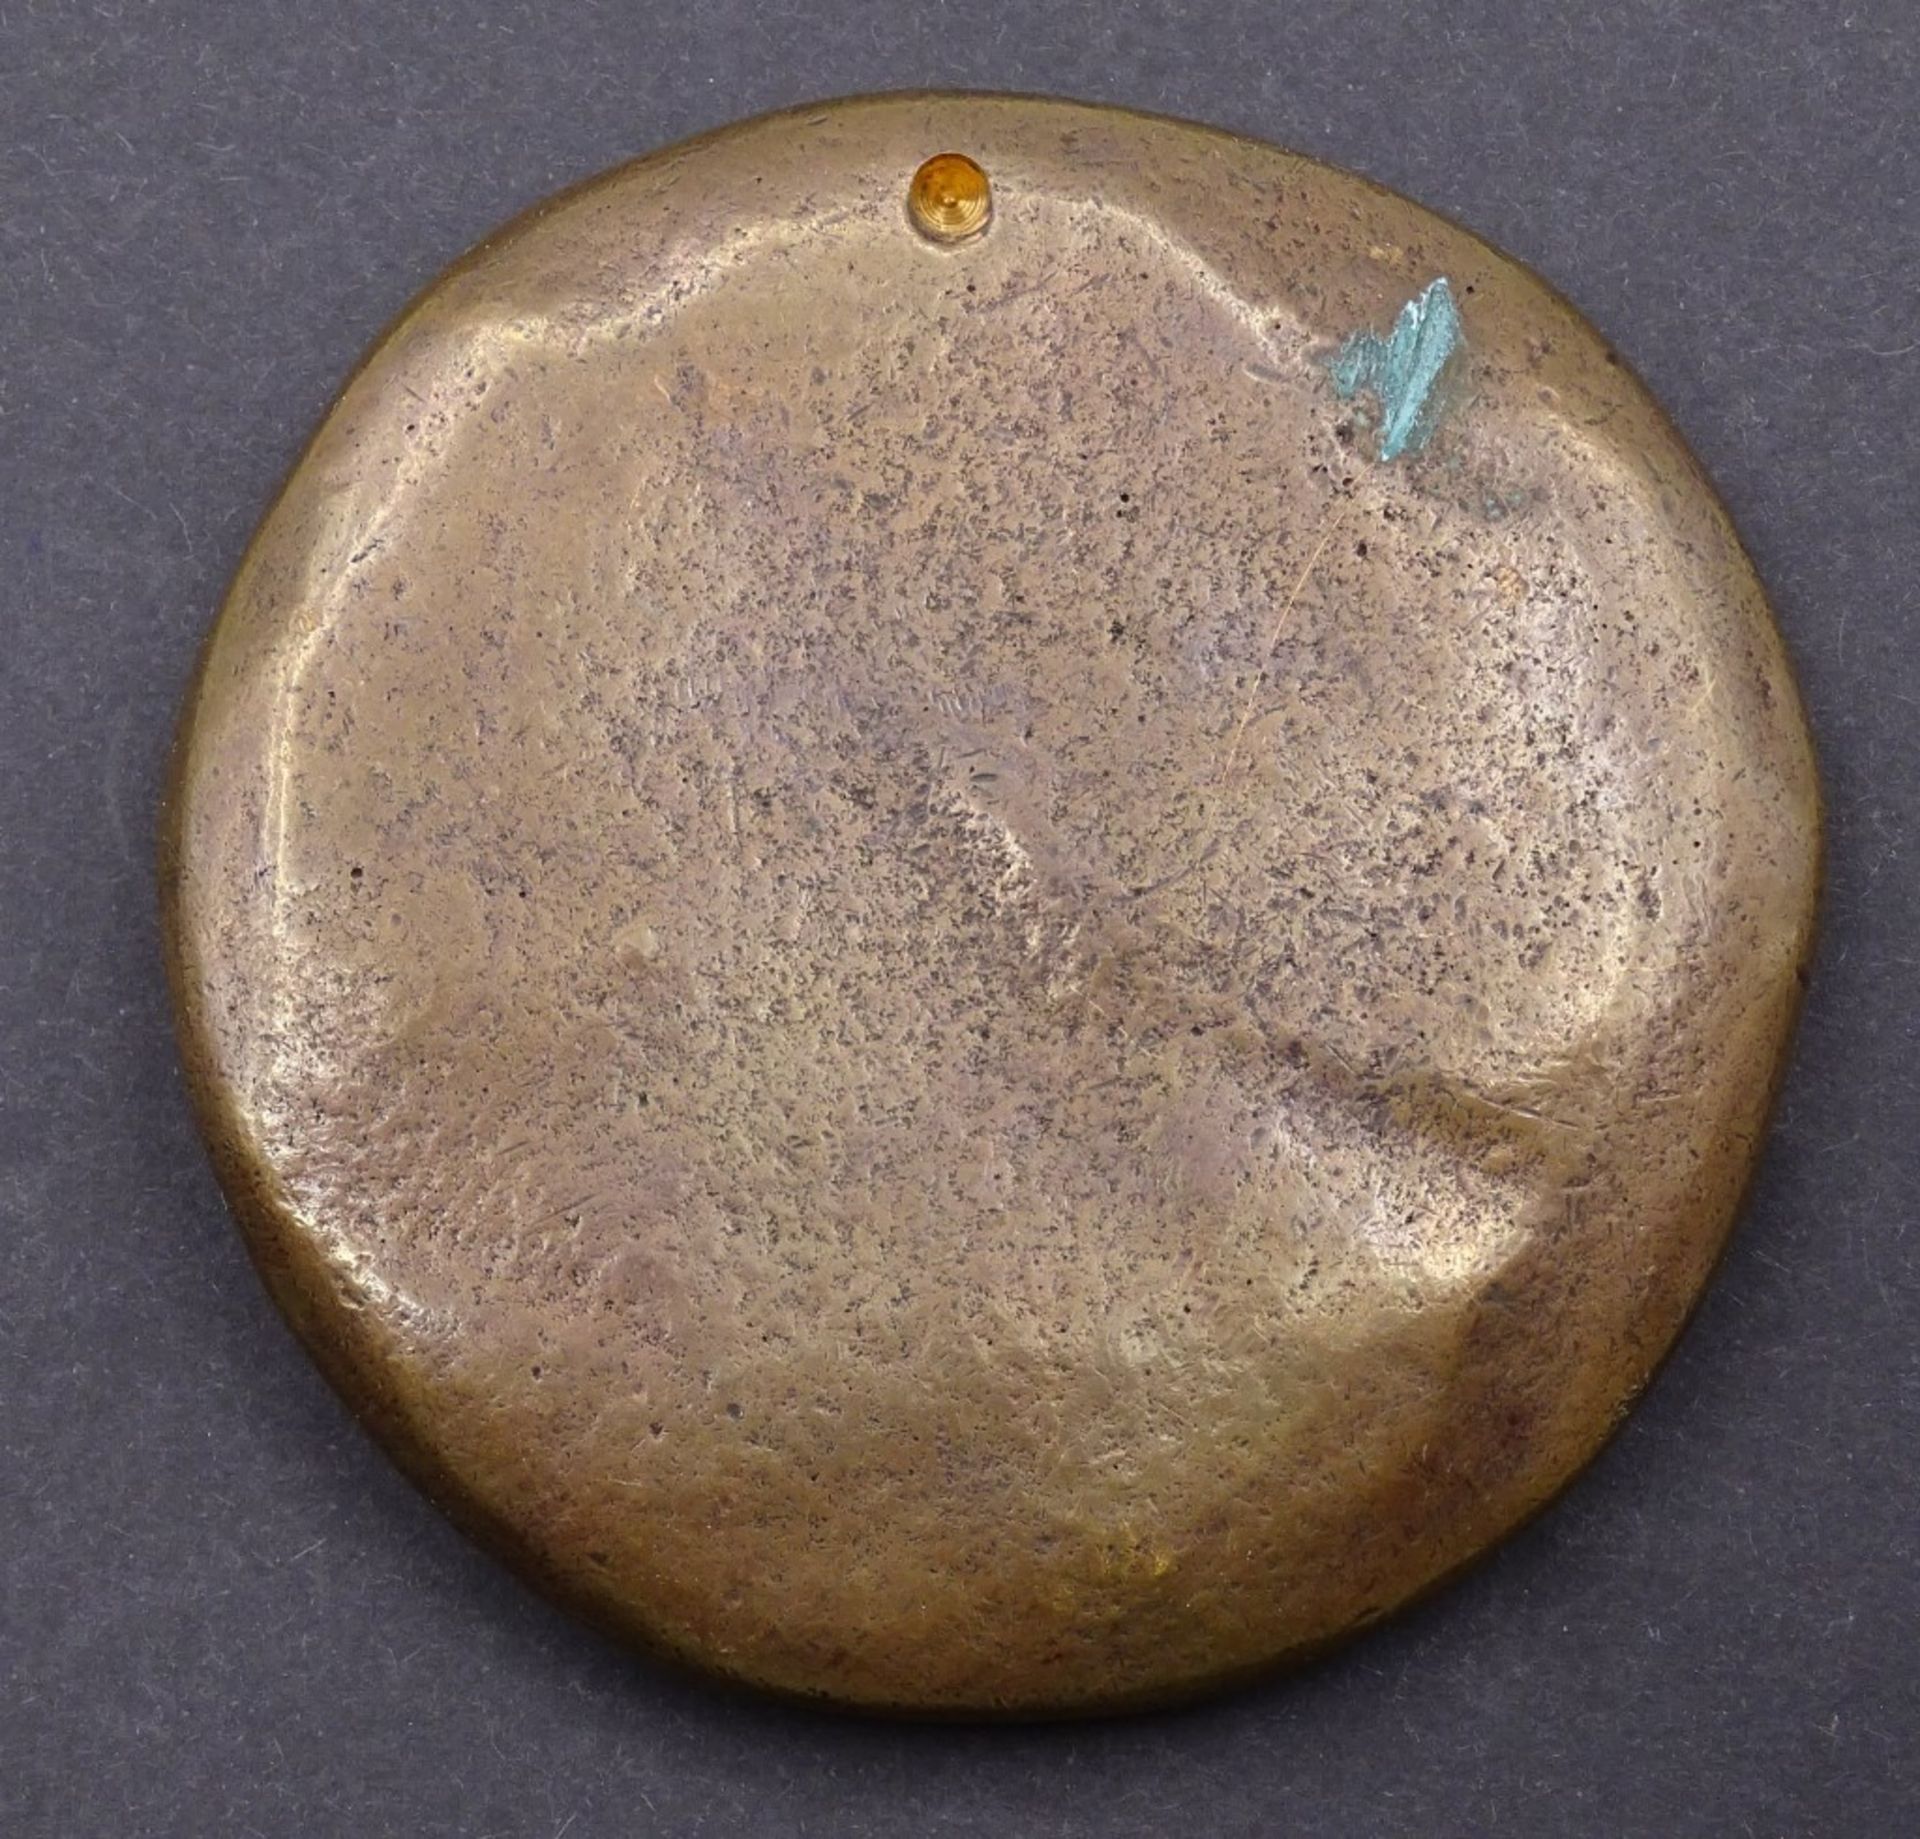 Schwere Bronze Medaille.d-72mm - Image 2 of 2